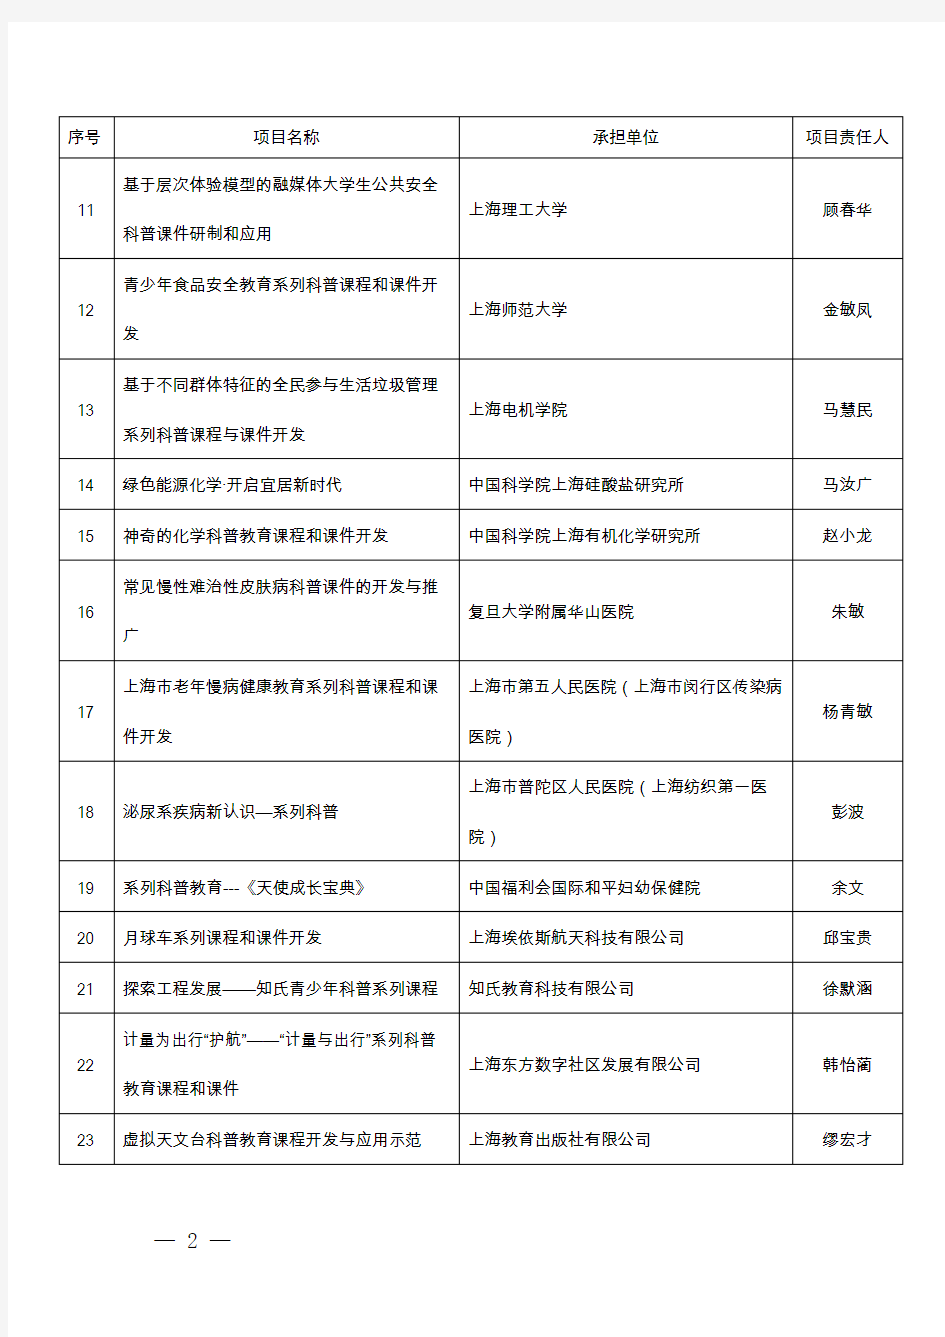 上海市2019年度科技创新行动计划科普指南项目立项清单